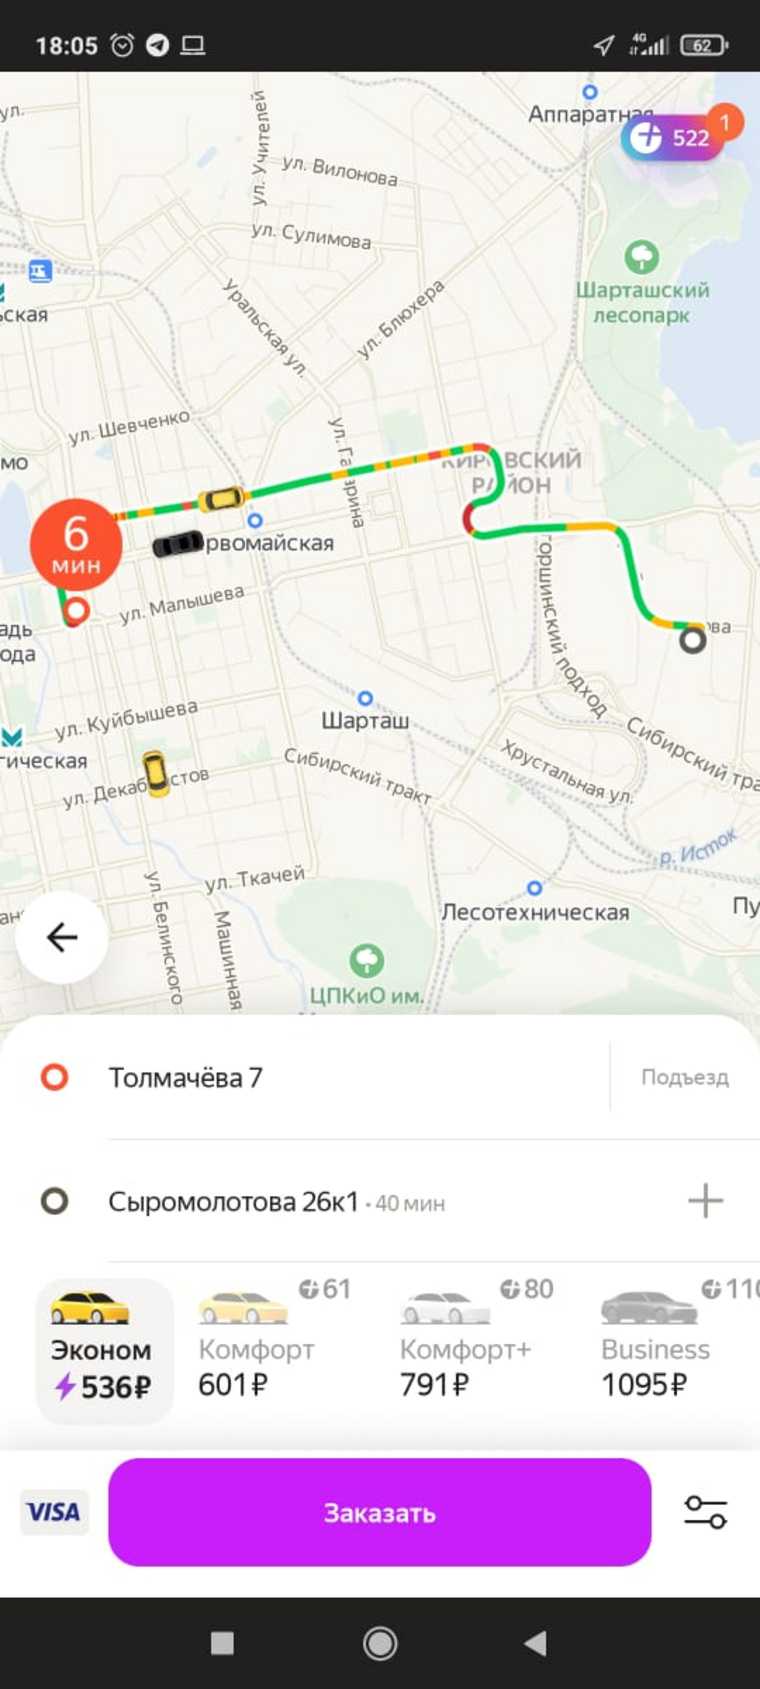 Из-за грозы в Екатеринбурге взлетели цены на такси. Скрин